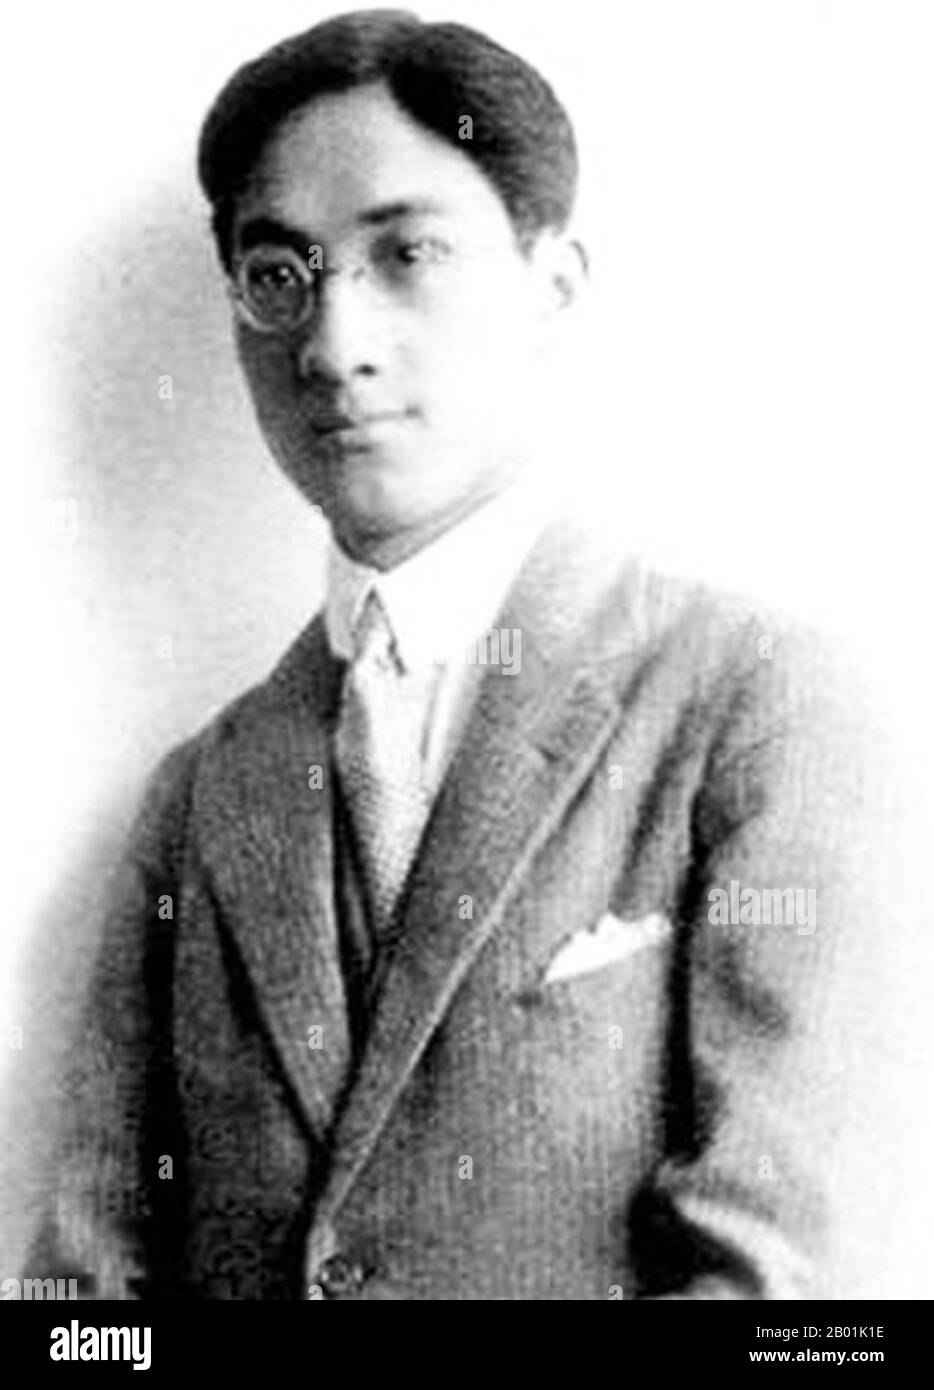 China: Xu Zhimo, chinesischer Dichter und Intellektueller (15. Januar 1897 bis 19. November 1931), 1931. Xu Zhimo war ein chinesischer Dichter des frühen 20. Jahrhunderts. Er erhielt den Namen Zhangxu und den Höflichkeitsnamen Yousen (槱森). Später änderte er seinen Höflichkeitsnamen in Zhimo (志摩). Er ist romantisiert, weil er sein ganzes Leben lang Liebe, Freiheit und Schönheit sucht (nach den Worten von Hu Shi). Er förderte die Form der modernen chinesischen Poesie und leistete daher enorme Beiträge zur modernen chinesischen Literatur. Stockfoto